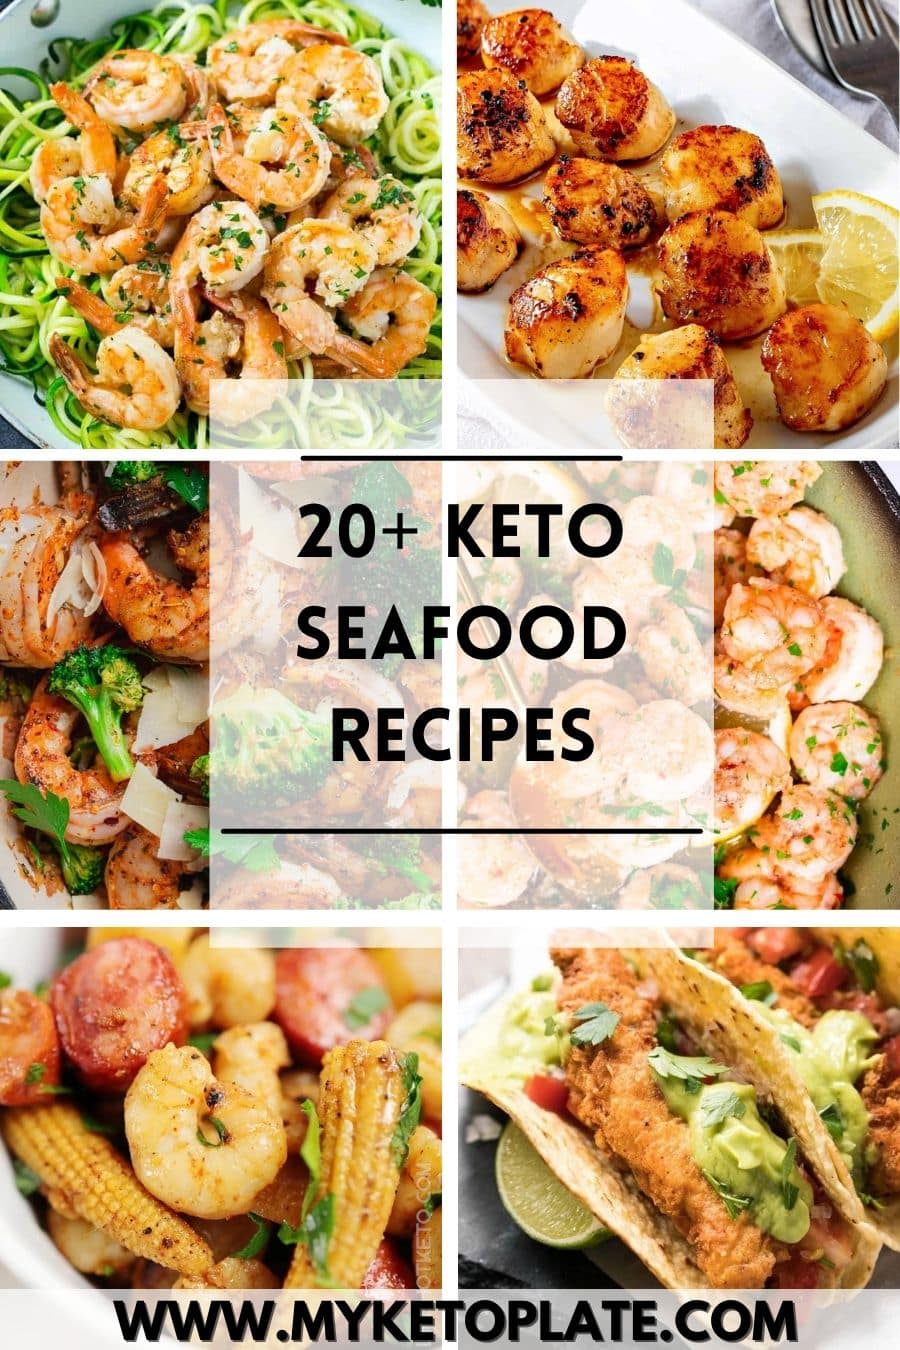 20+ Keto Seafood Recipes